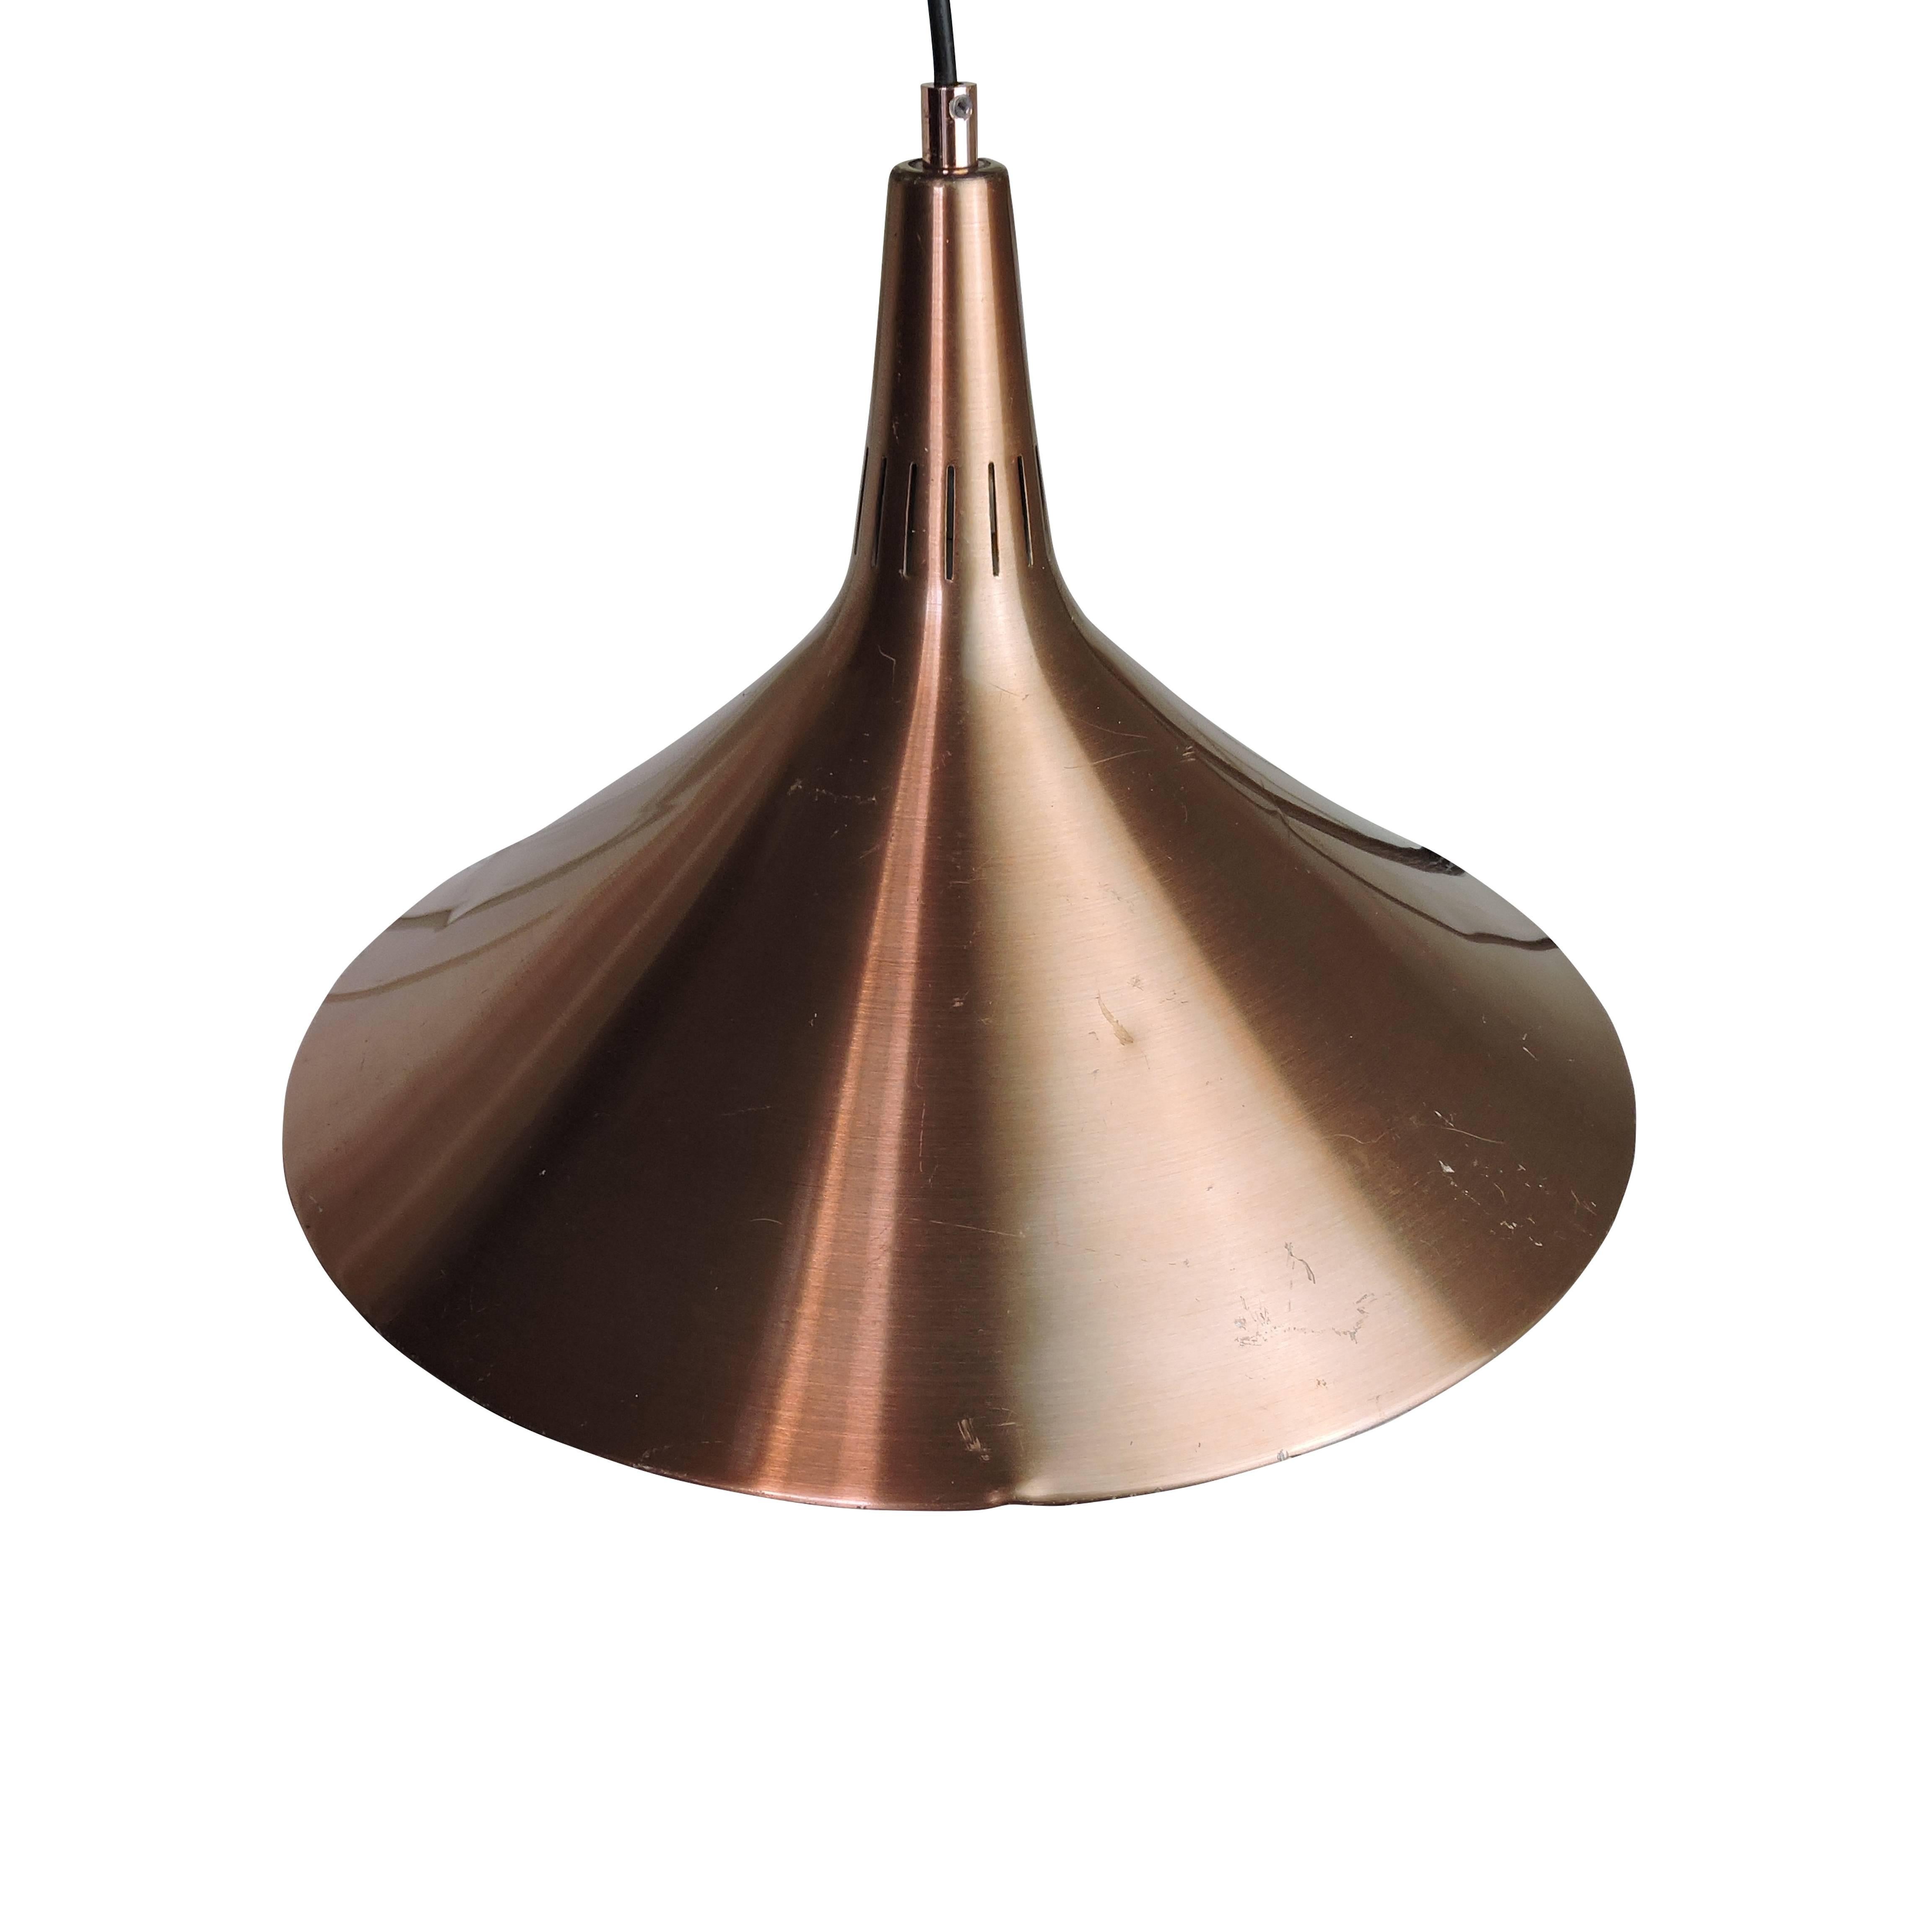 This bronze colored Danish designed pendant light is in brushed aluminium.